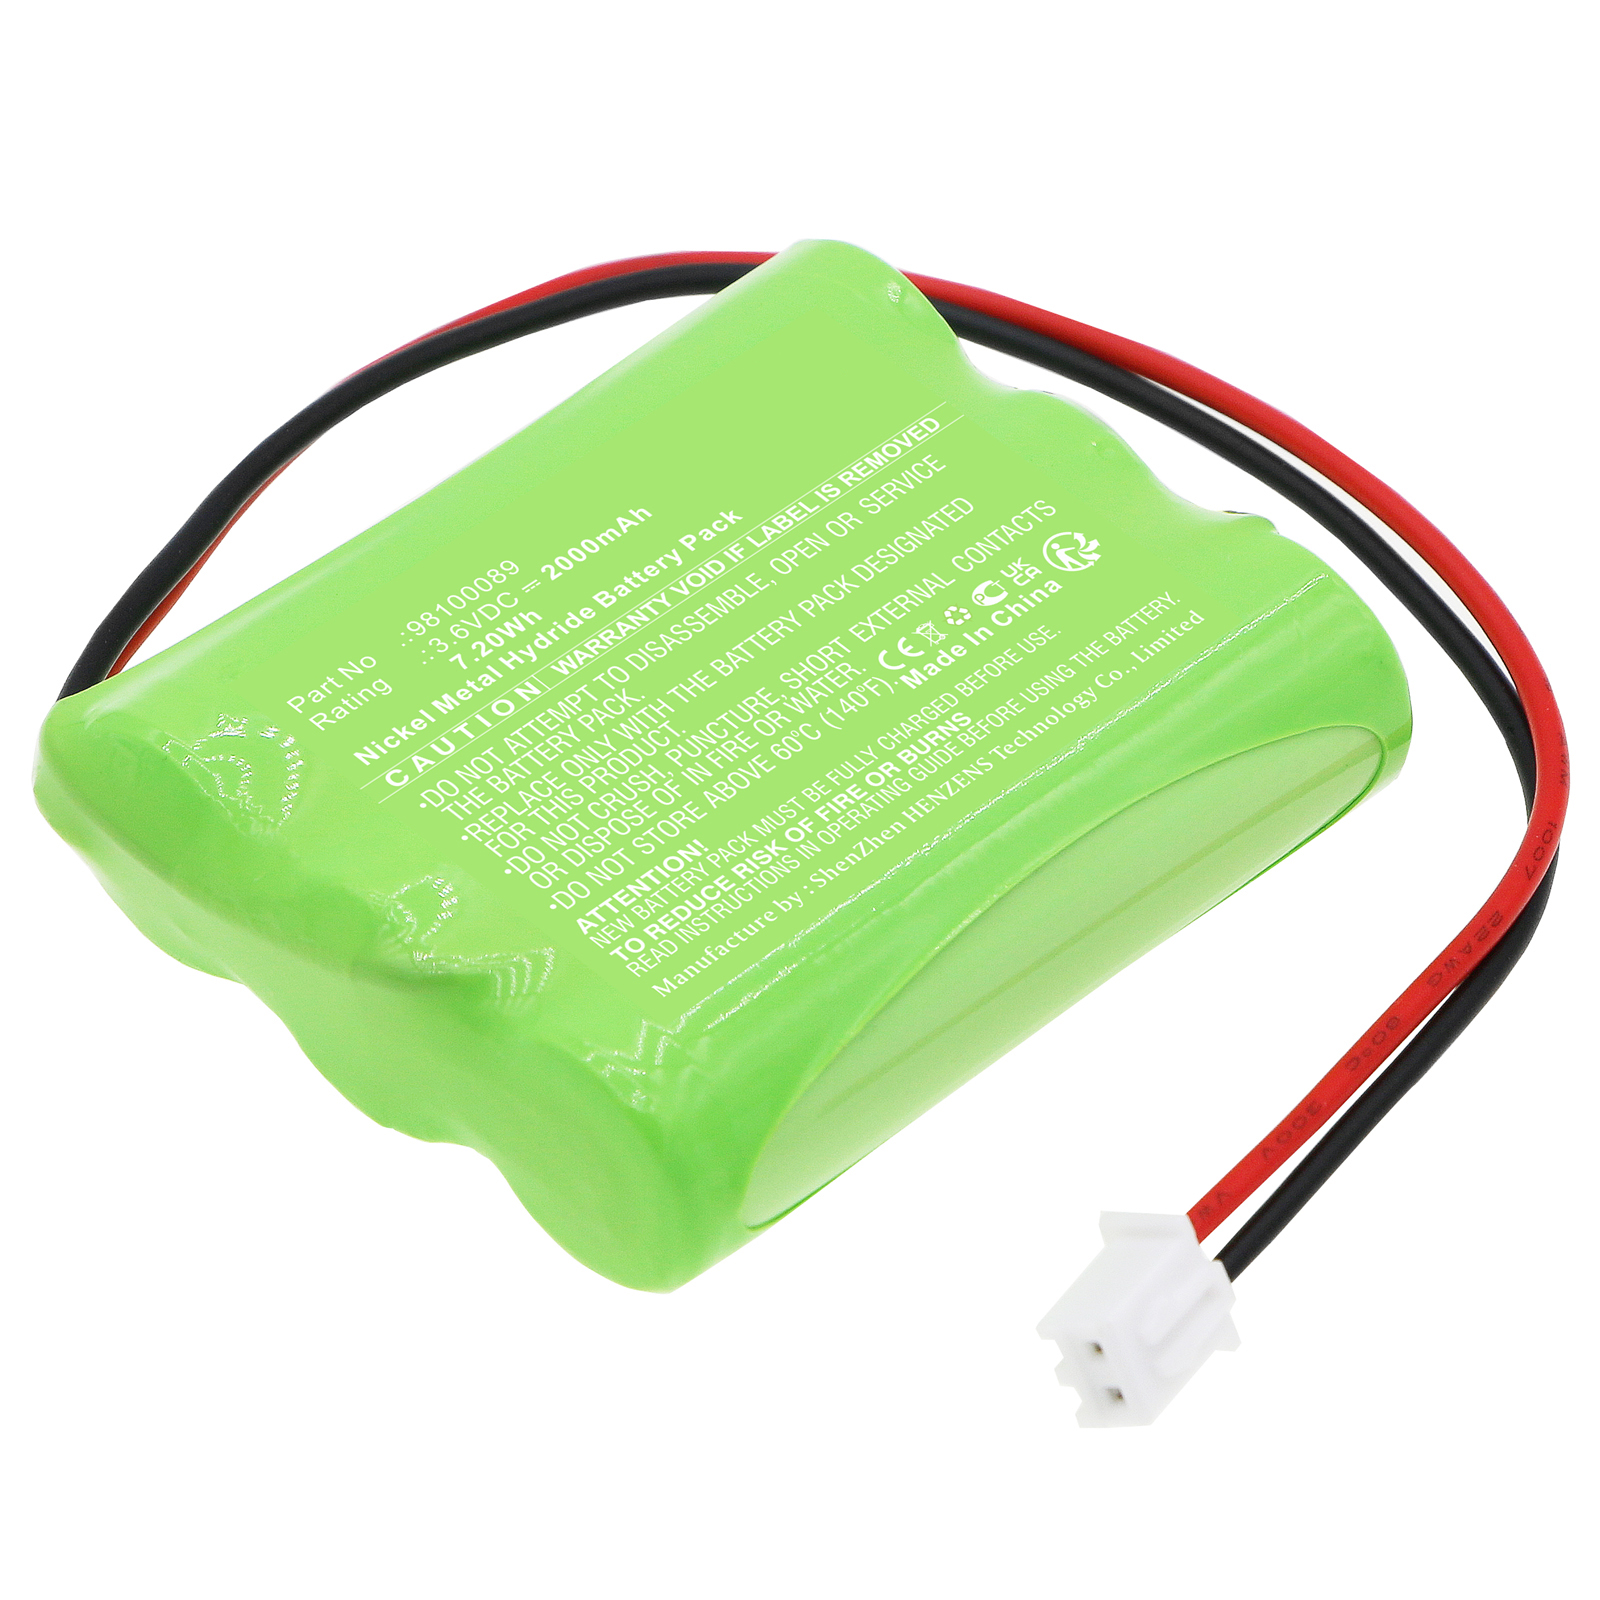 Synergy Digital Emergency Lighting Battery, Compatible with Fischer 98100089 Emergency Lighting Battery (Ni-MH, 3.6V, 2000mAh)